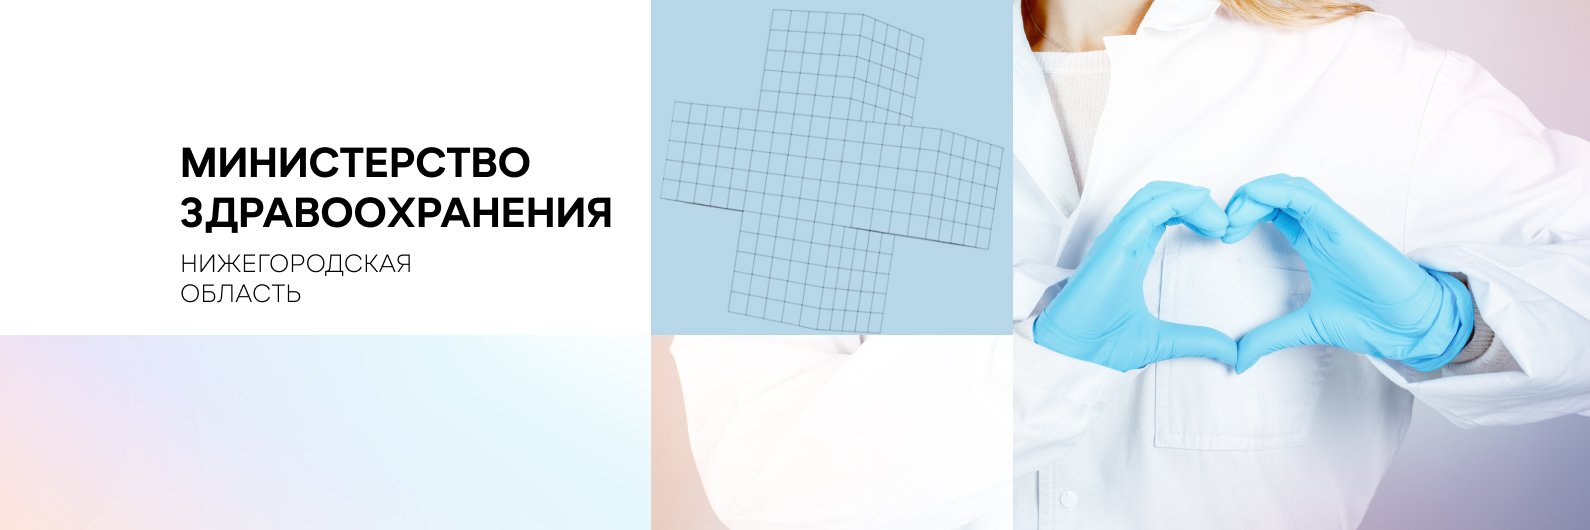 Реконструкция отделения реанимации и операционной будет проведена в стационаре больницы Дзержинска по нацпроекту «Здравоохранение»